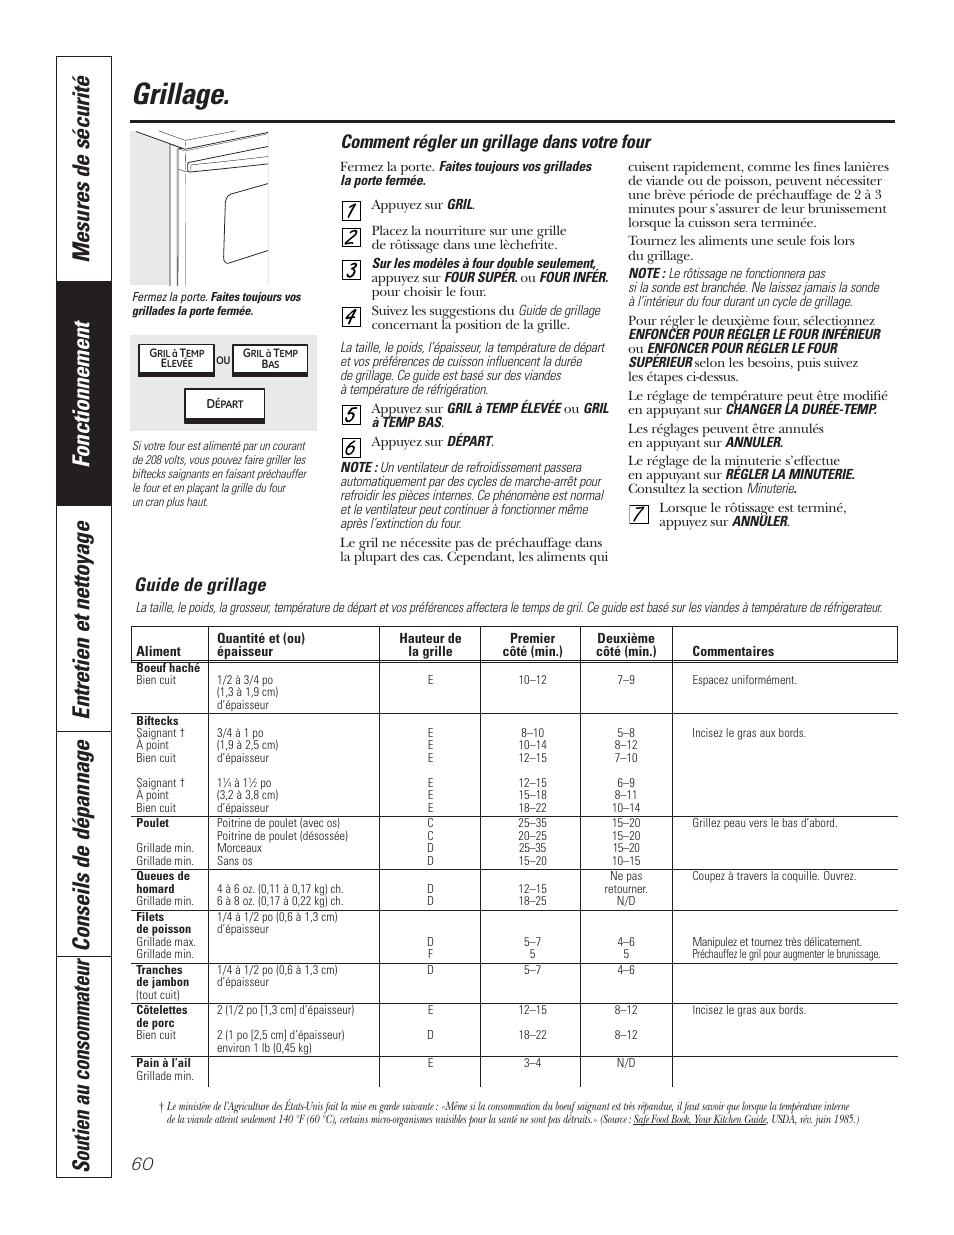 Gril, Grillage, Comment régler un grillage dans votre four | Guide de grillage | GE PT92030 User Manual | Page 60 / 140